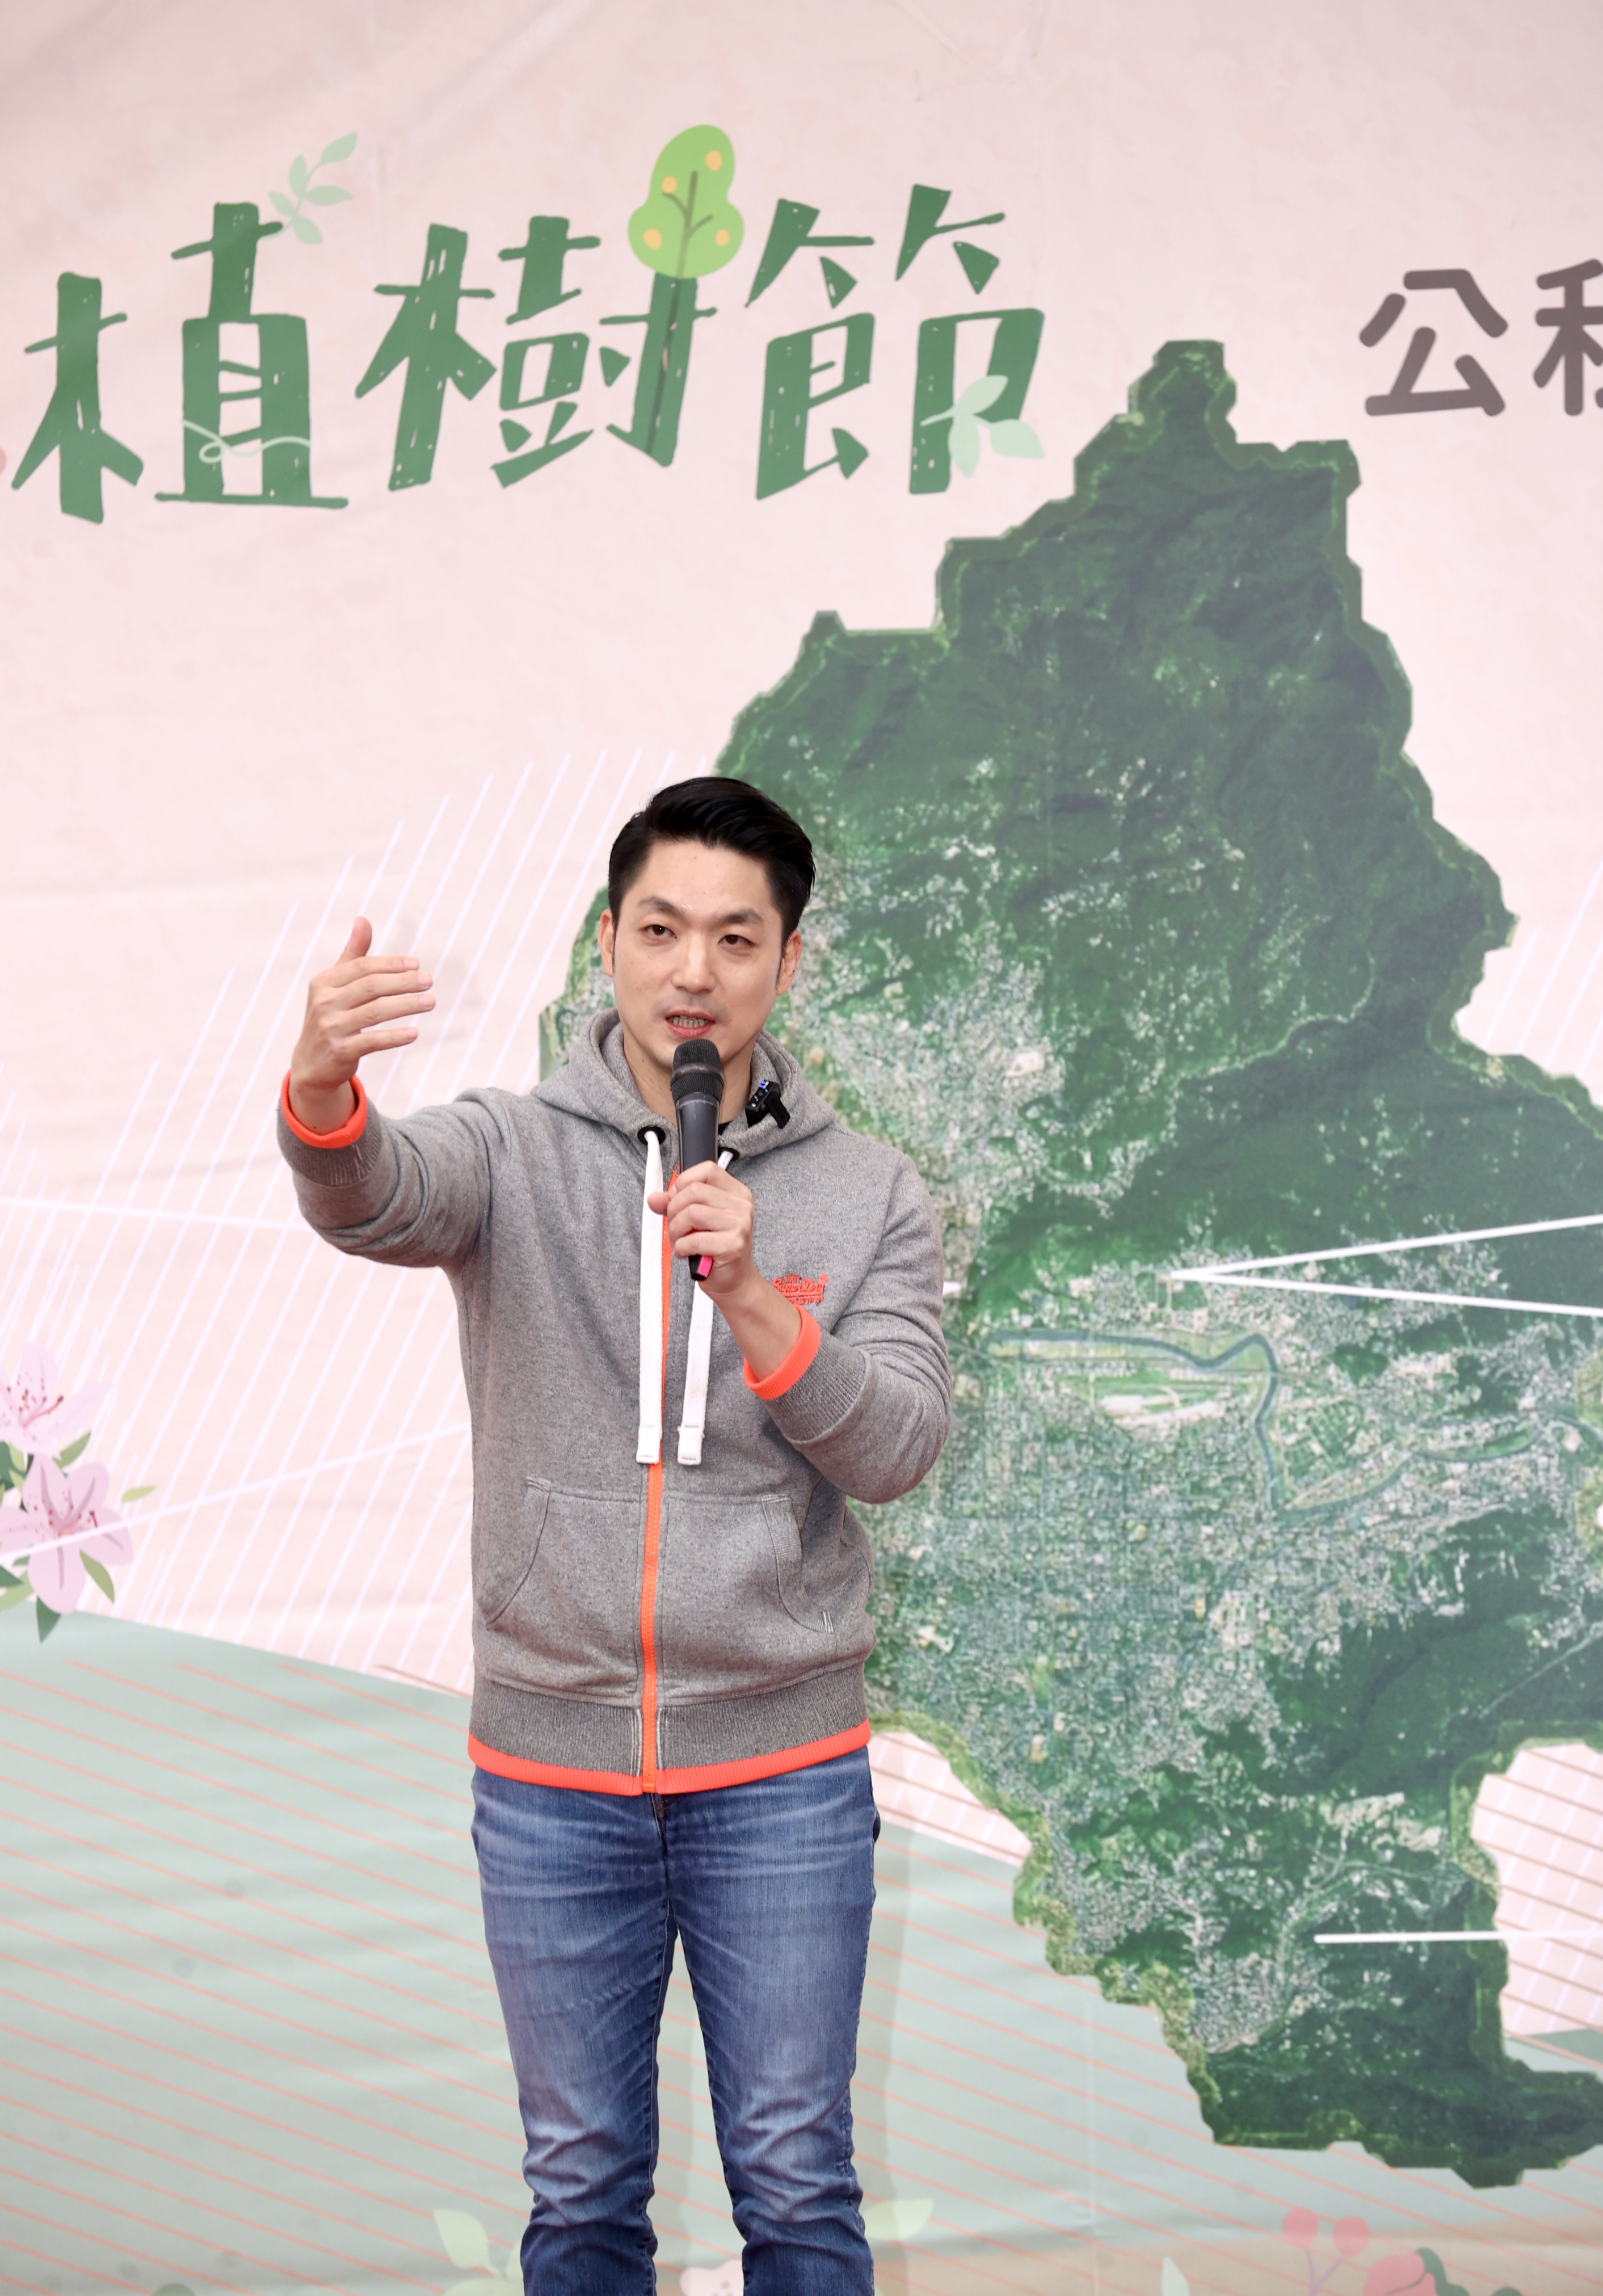 台北市长蒋万安今天出席台北市立动物园，与企业共同推动宣誓认养植树造林活动。记者林俊良／摄影